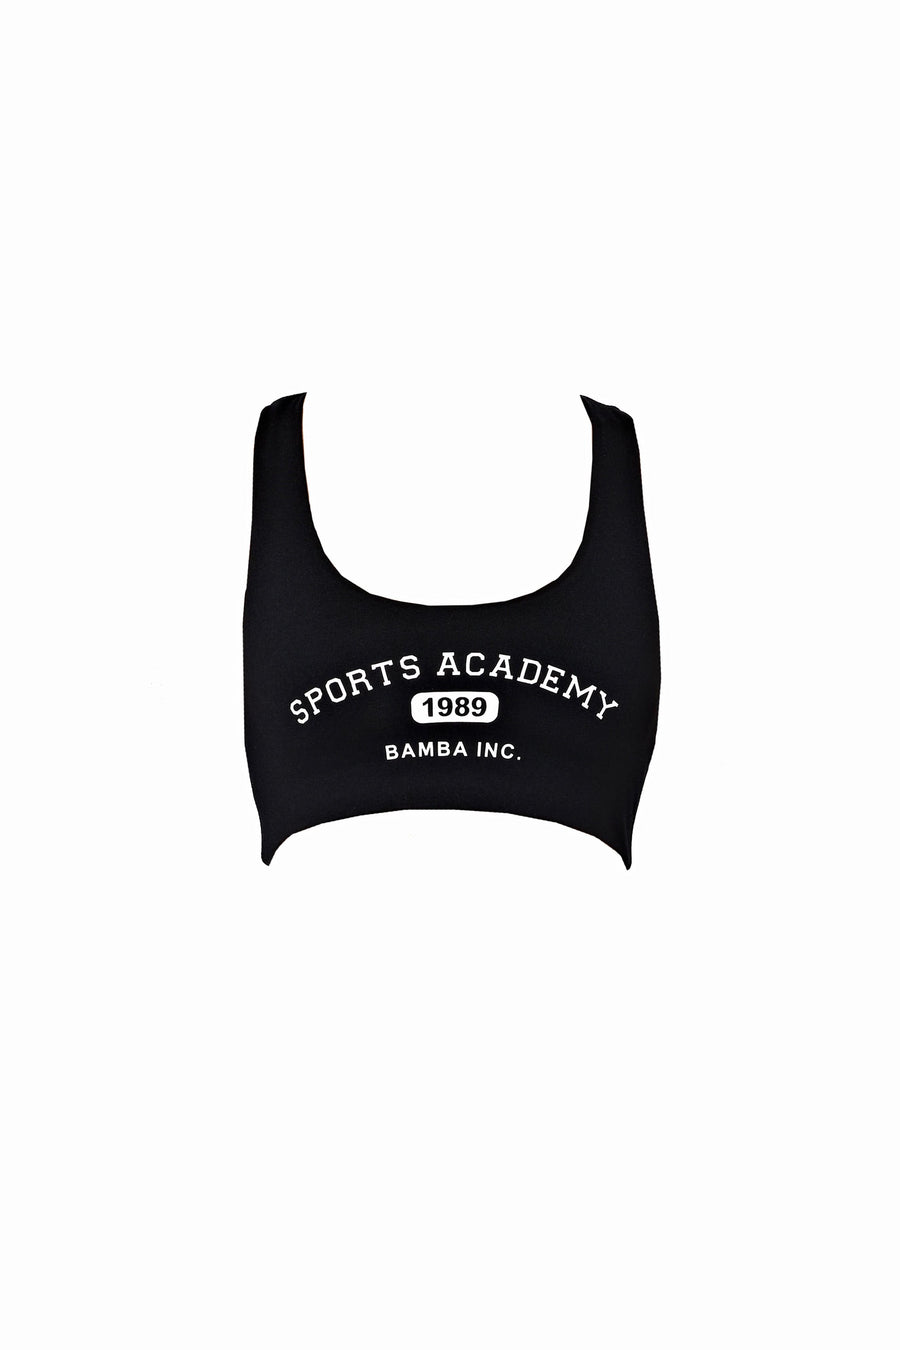 Sports Academy Bra - blk/ wht  -  CLOTHING  -  B Ā M B A S W I M